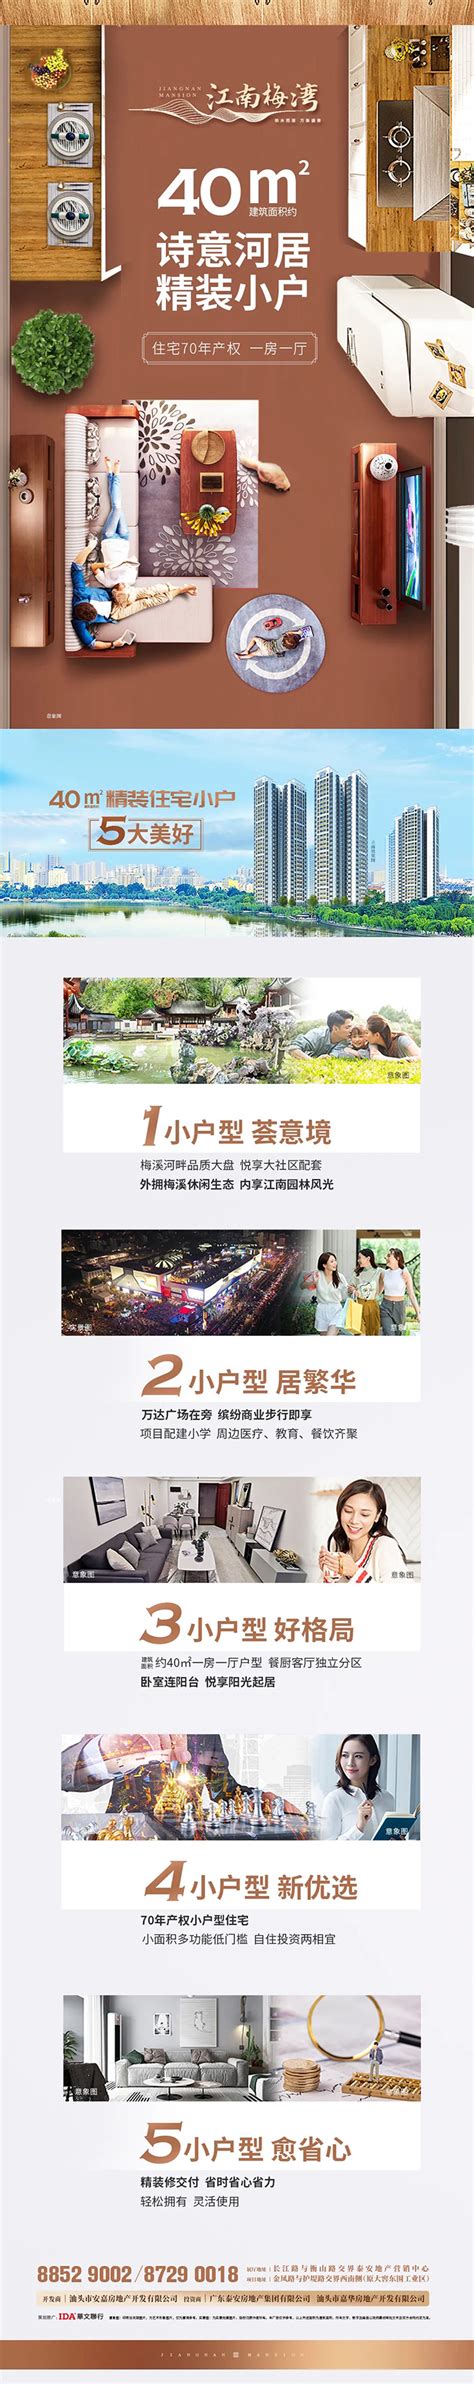 华新·时代公园：惠战双十一 放价轻松购-本地新闻 - 泰安房地产网